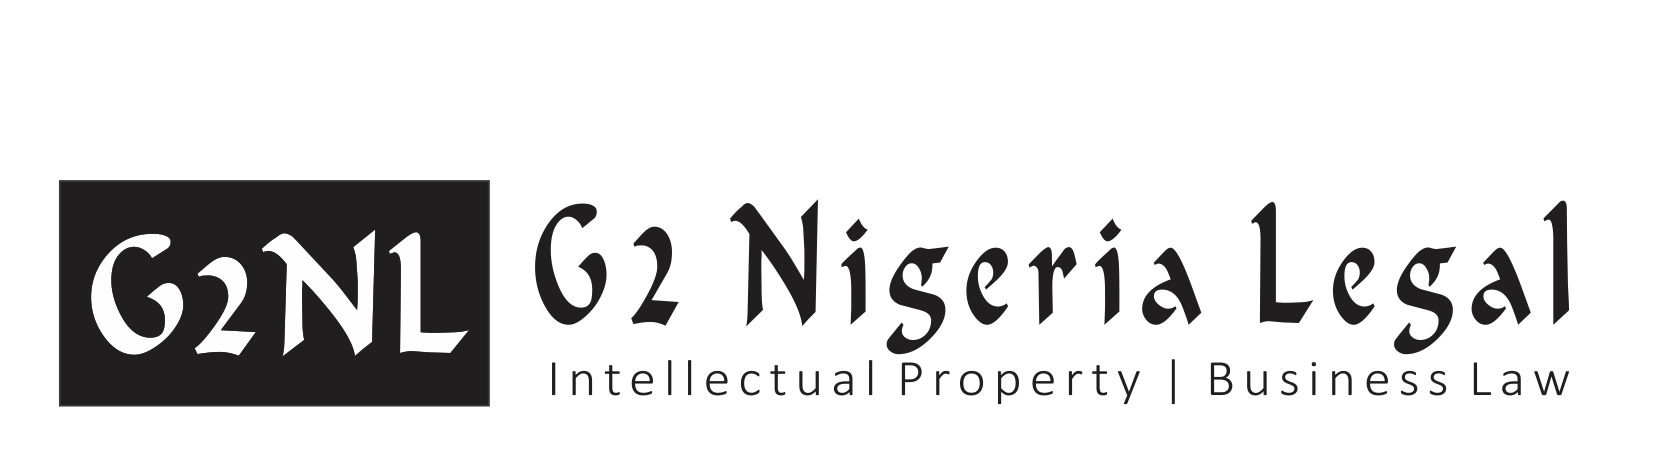 尼日利亞的商標律師尼日利亞的商標律師尼日利亞的商標律師尼日利亞的商標律師尼日利亞的專利律師尼日利亞的專利律師尼日利亞的商標律師尼日利亞的商標律師和尼日利亞的專利律師尼日利亞的商標和專利律師